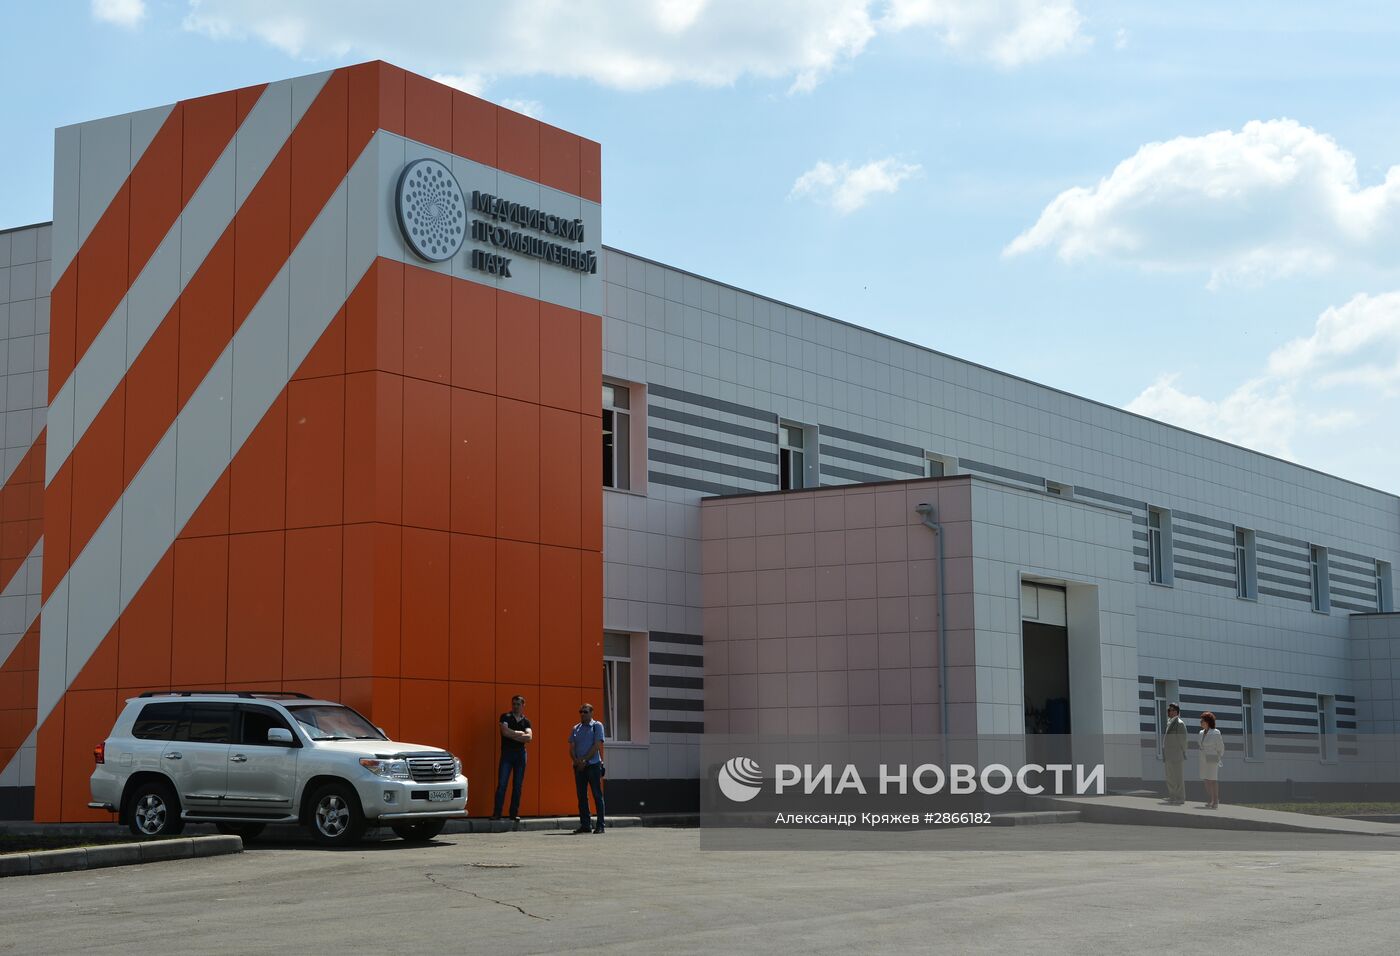 Открытие первой очереди промышленно-медицинского технопарка в Новосибирске